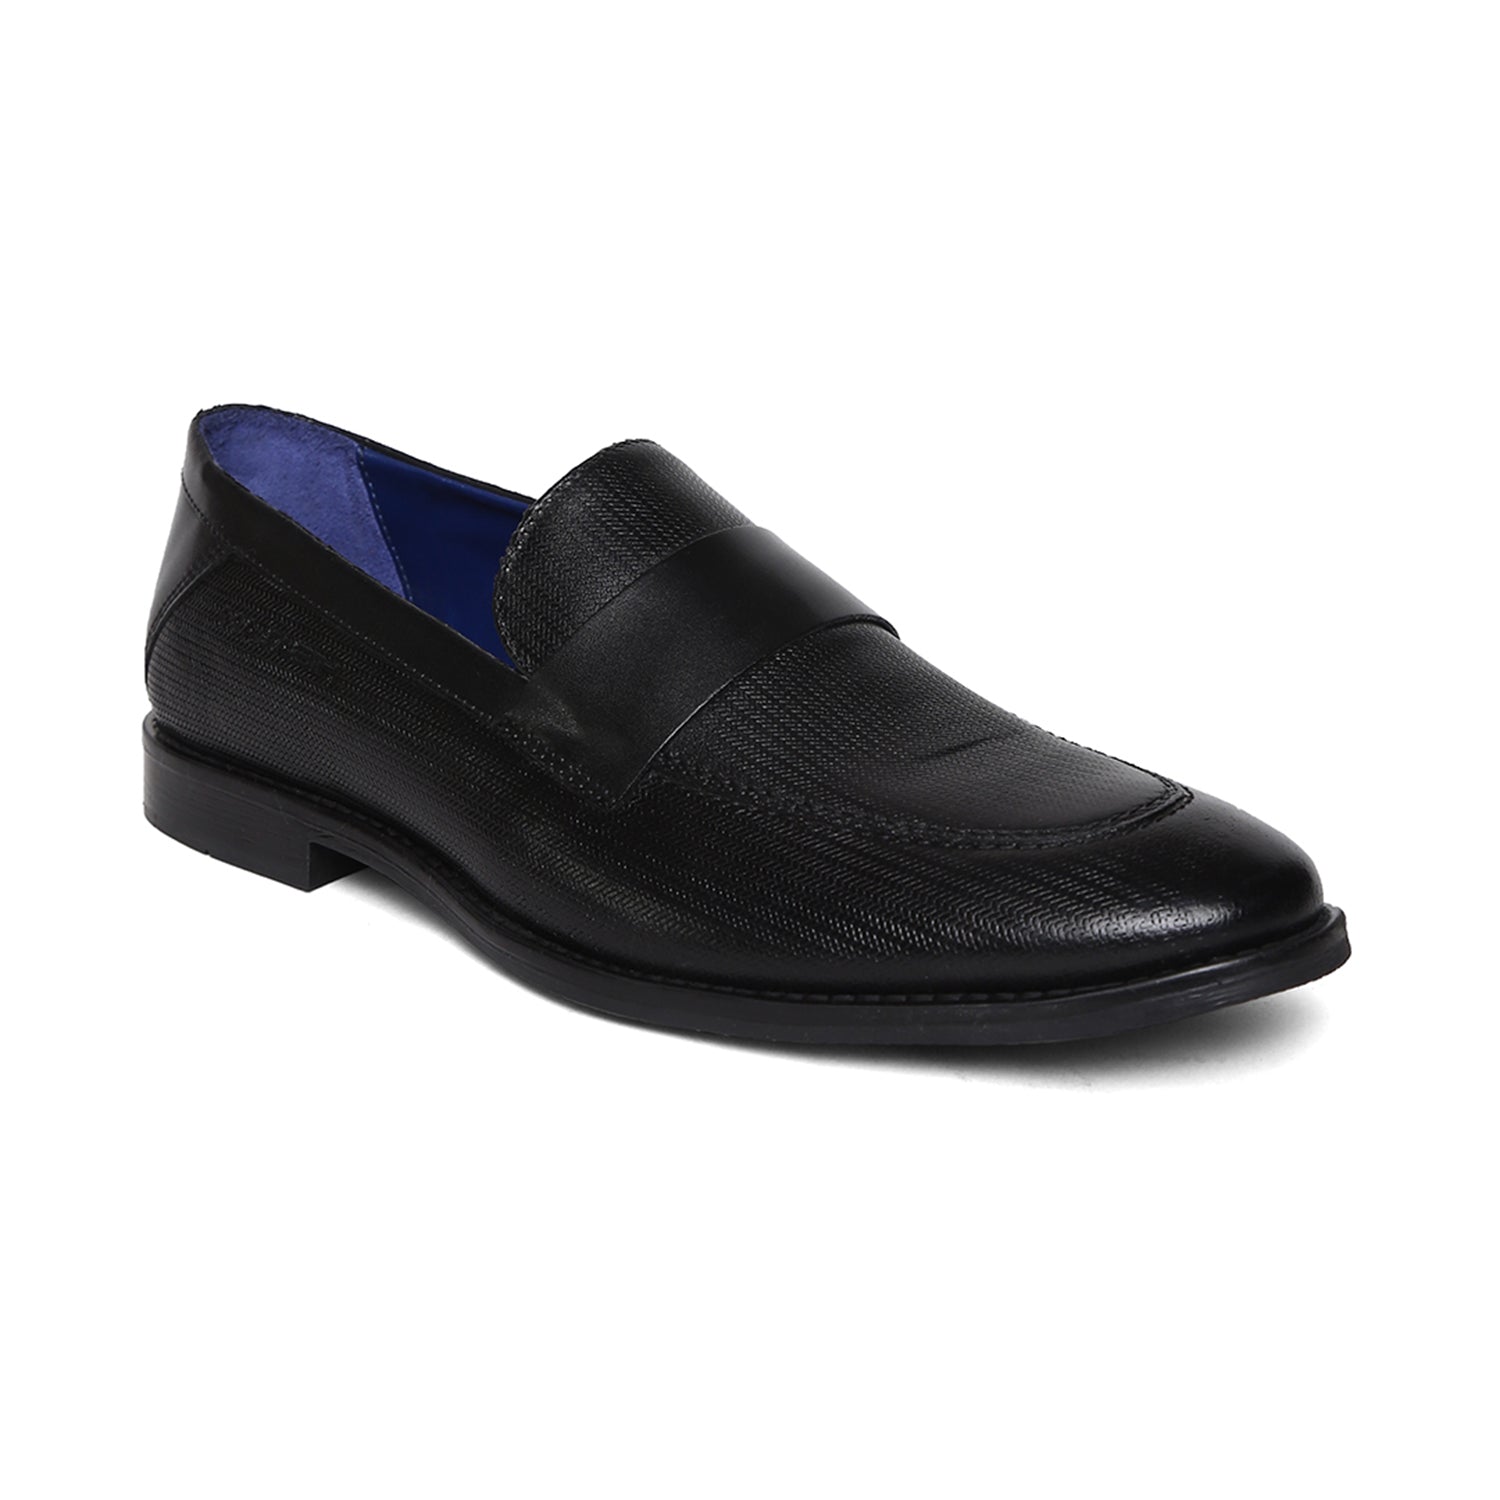 Masabih Genuine Leather Black Printed Loafer Slipon Shoes for Men